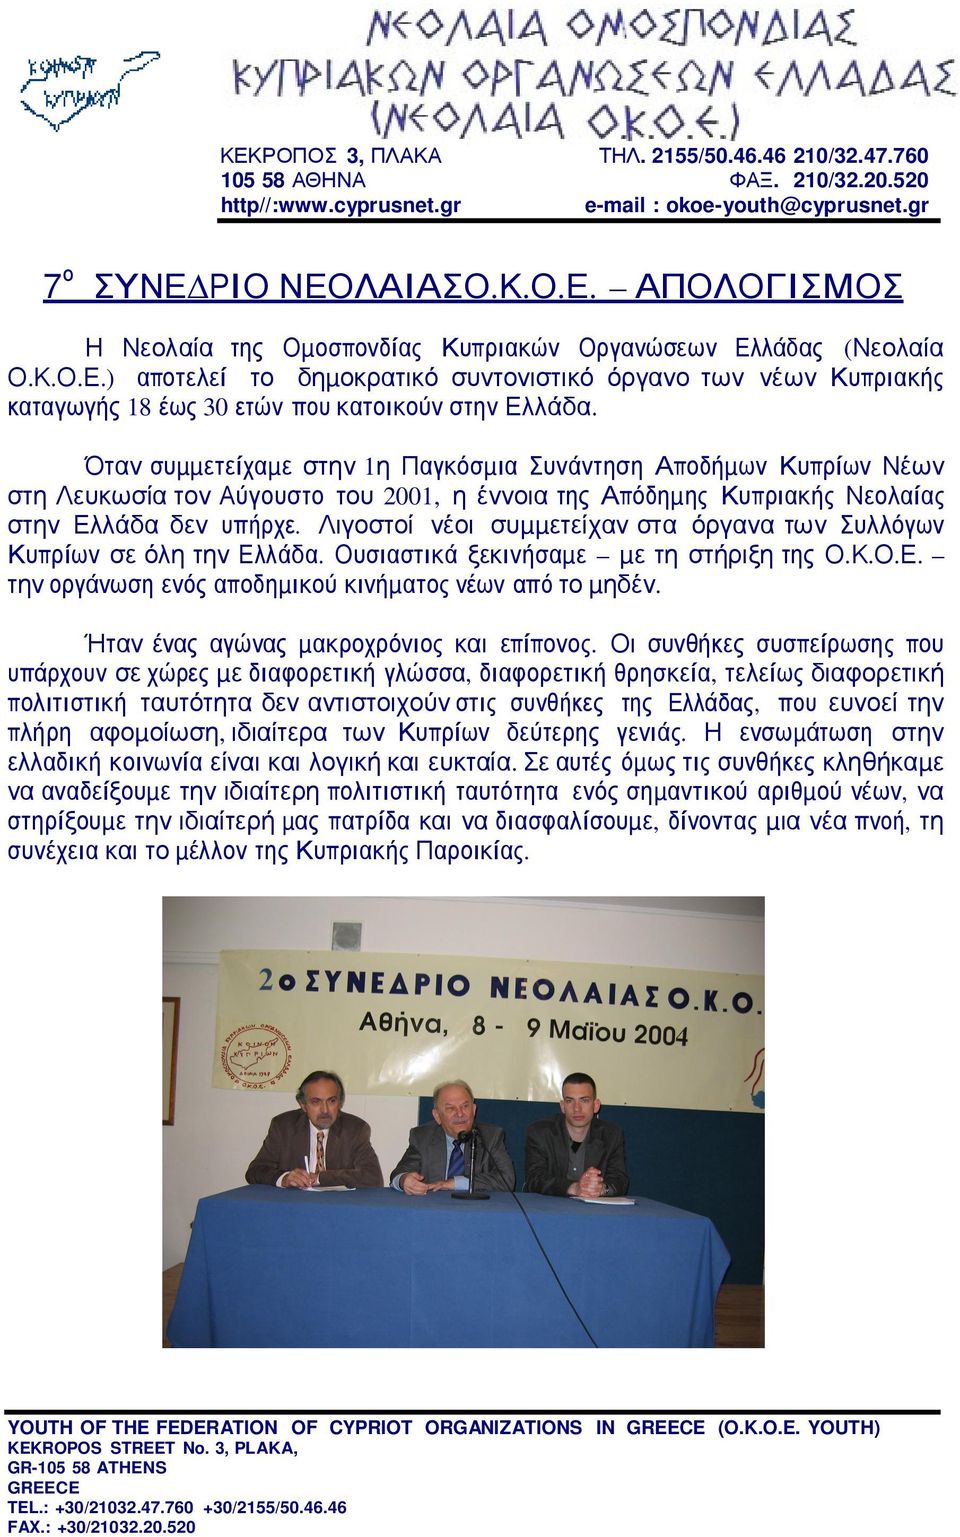 Όταν συµµετείχαµε στην 1η Παγκόσµια Συνάντηση Αποδήµων Κυπρίων Νέων στη Λευκωσία τον Αύγουστο του 2001, η έννοια της Απόδηµης Κυπριακής Νεολαίας στην Ελλάδα δεν υπήρχε.